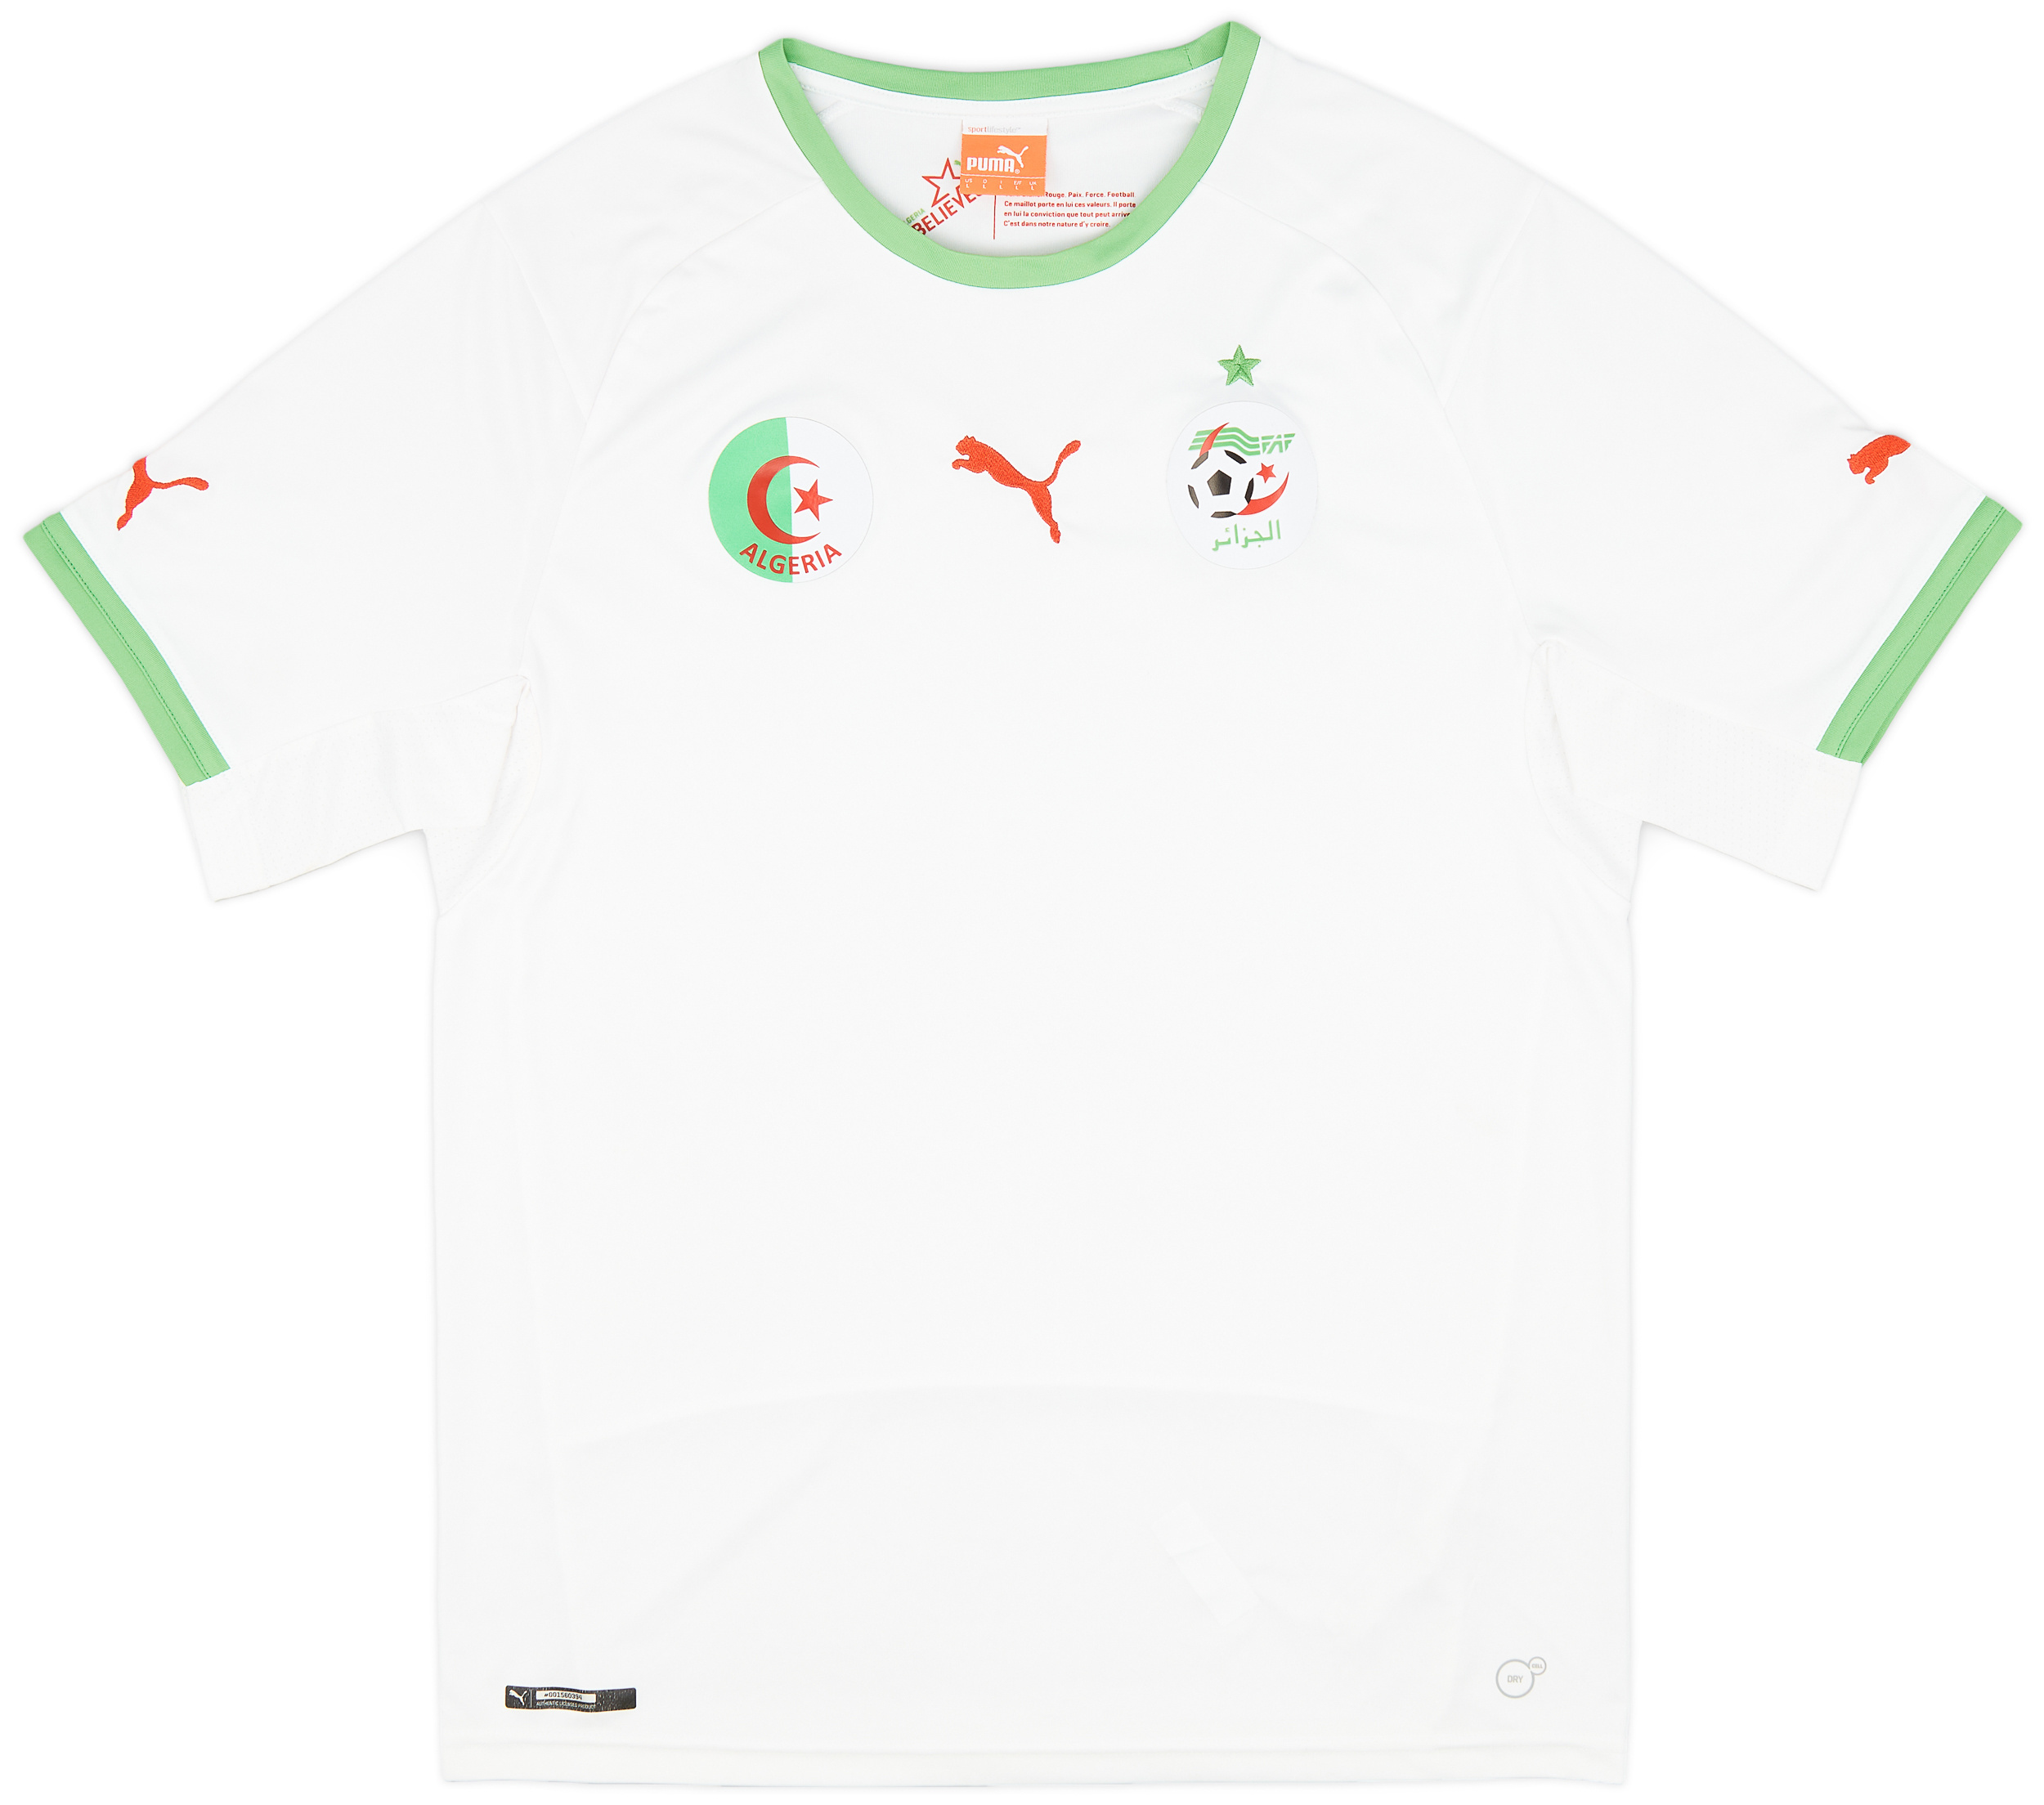 Retro Algeria Shirt